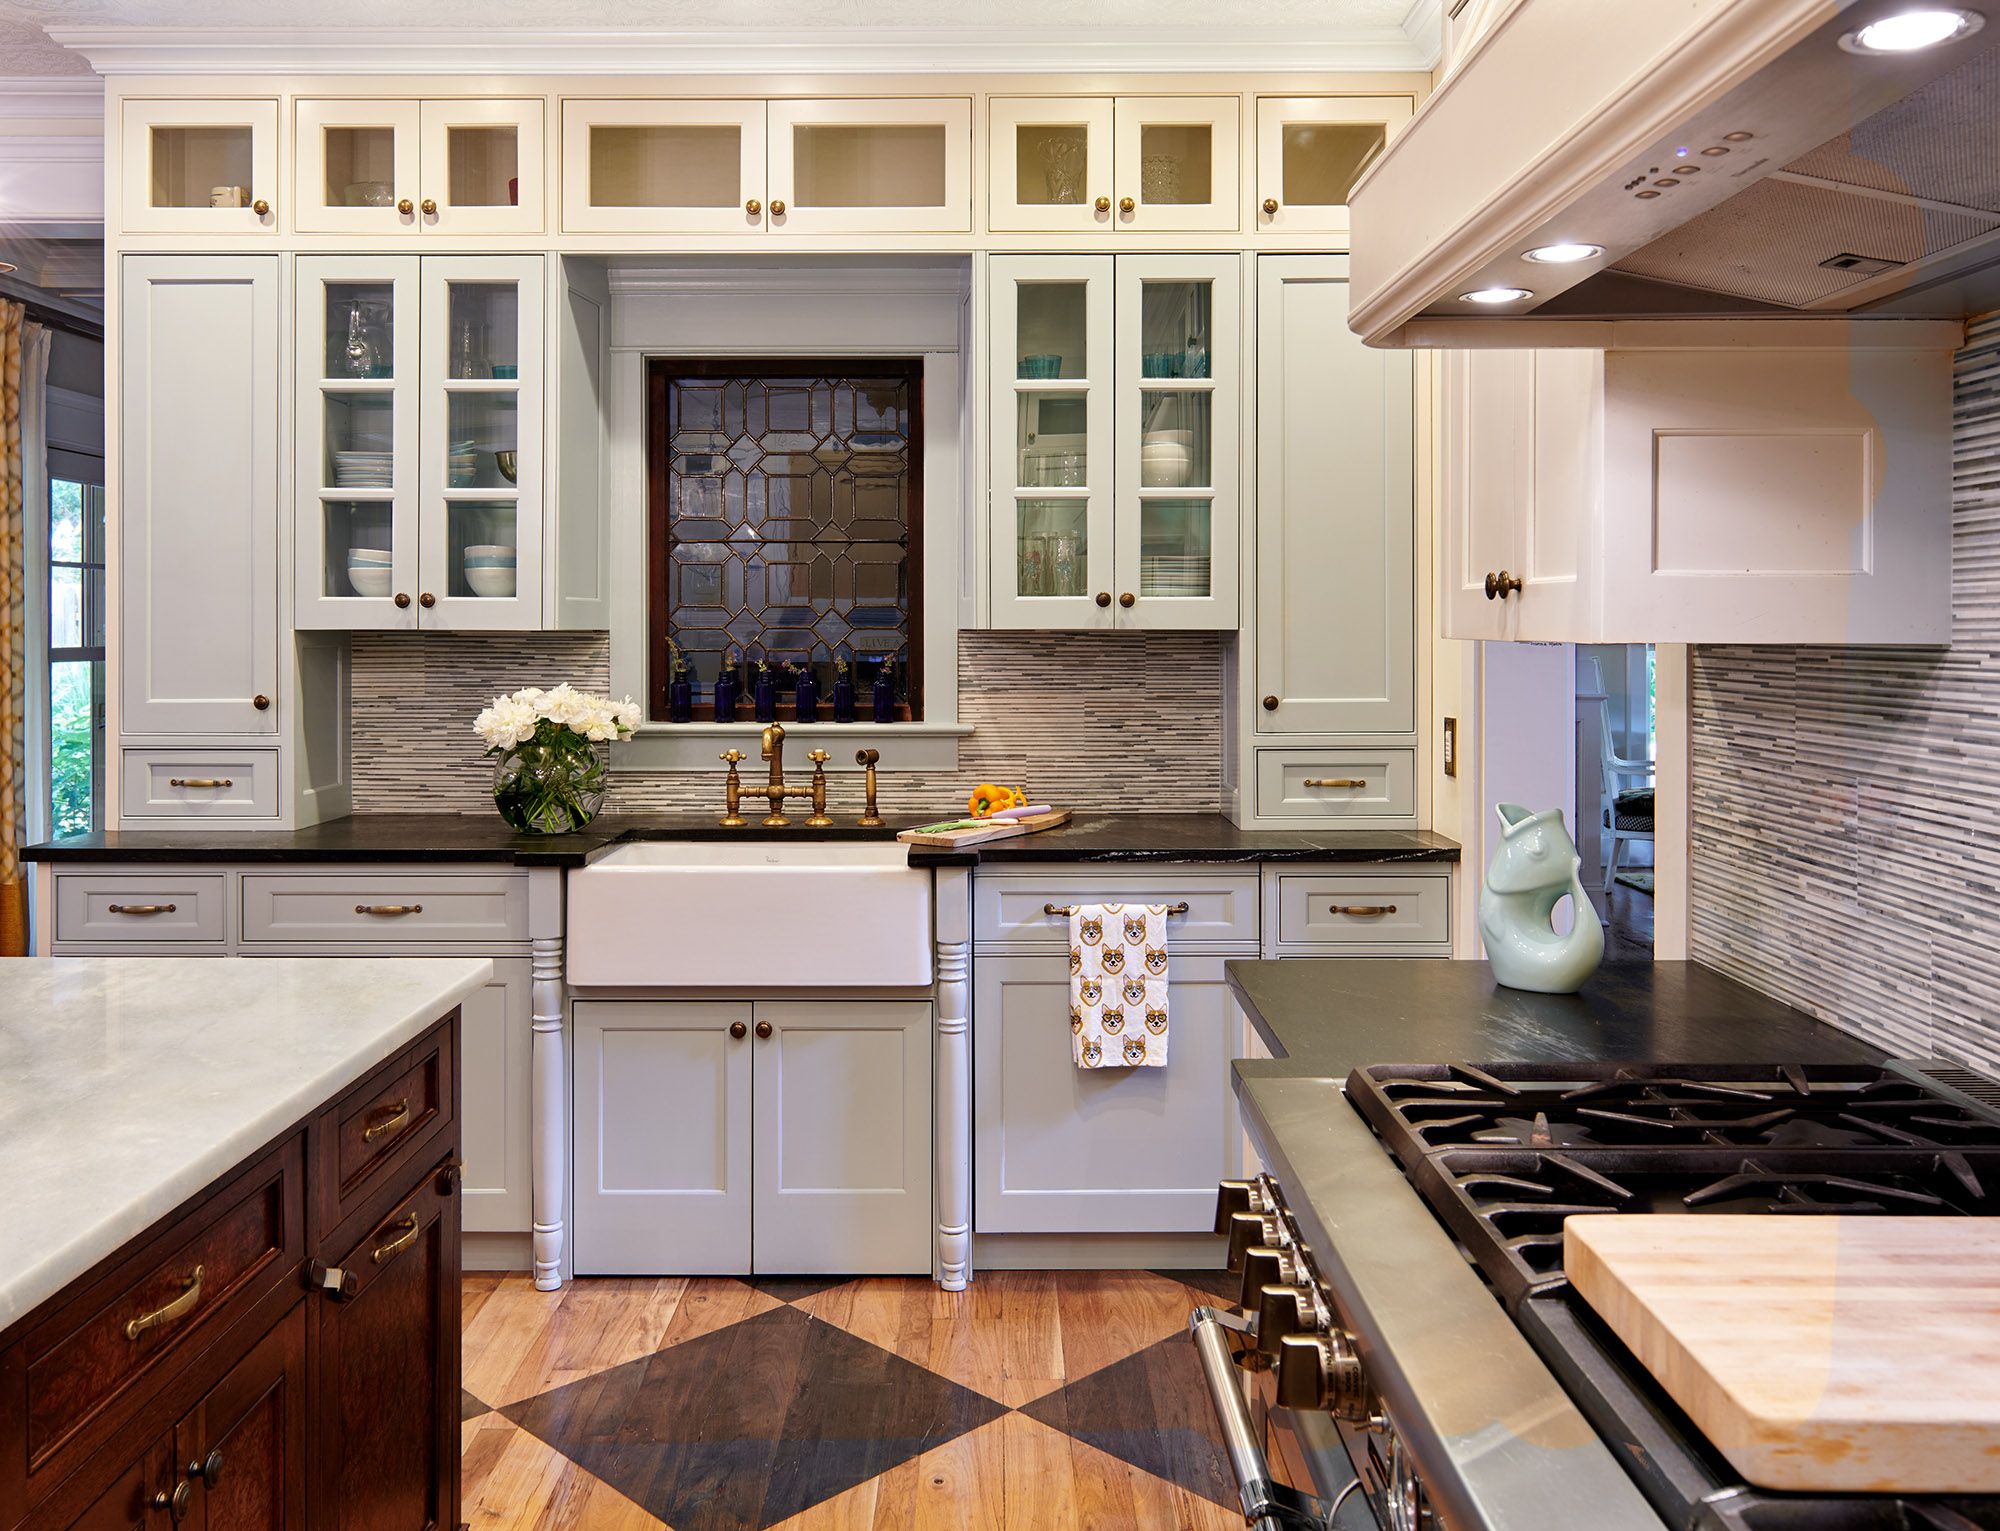 Γυάλινες πόρτες ντουλαπιών στην κουζίνα, ντουλάπια με κρέμα χρώματος με γυάλινα μέτωπα